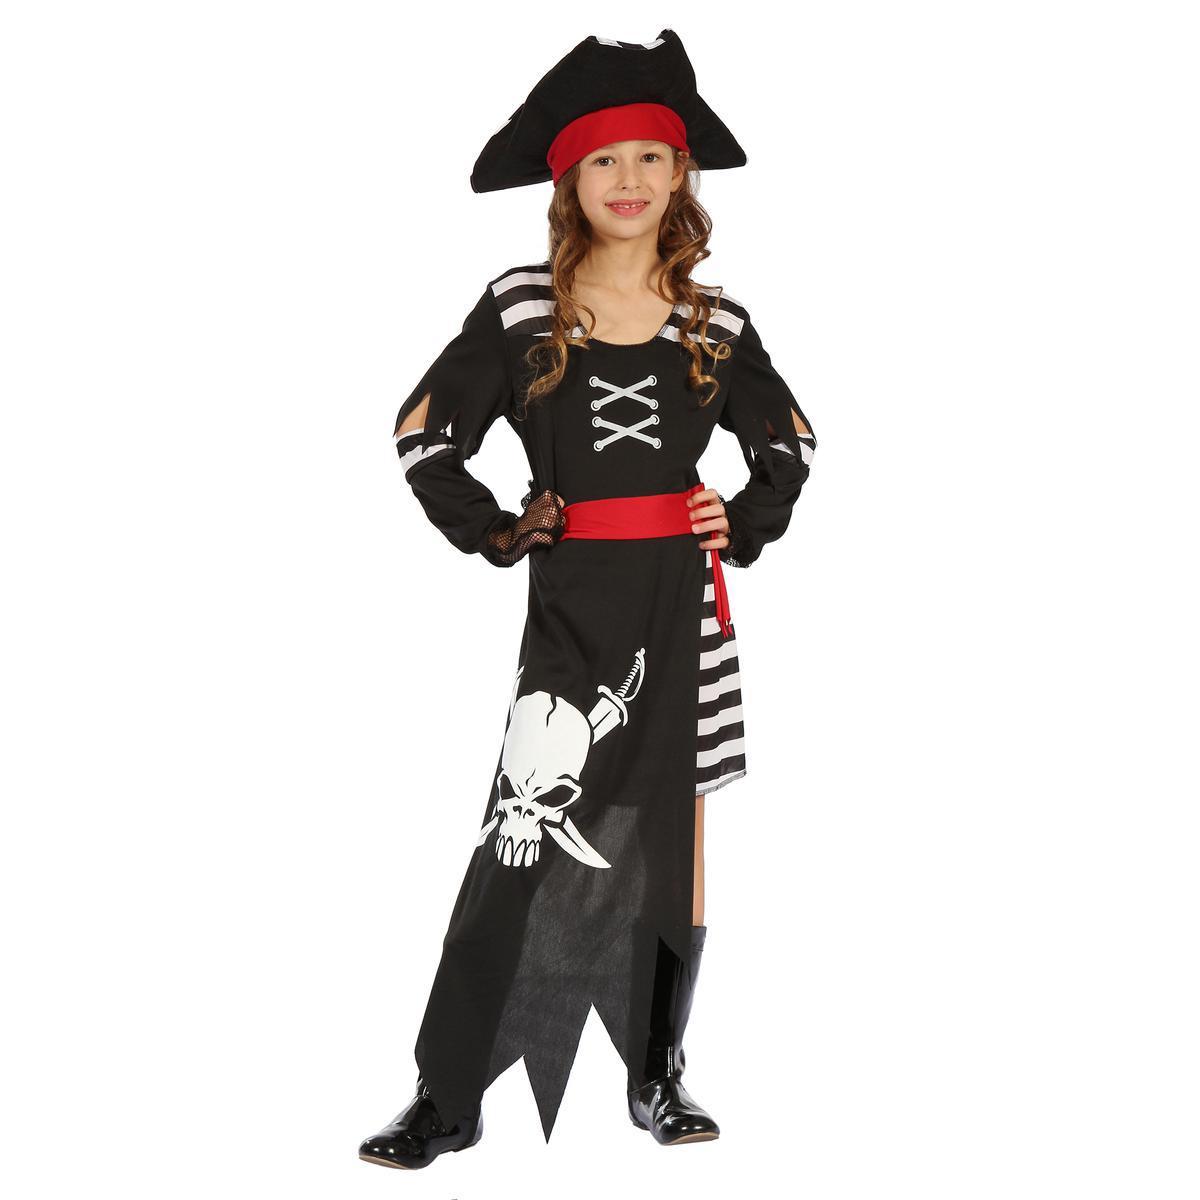 Déguisement de pirate rebelle - Polyester - 4 à 12 ans - Noir et blanc